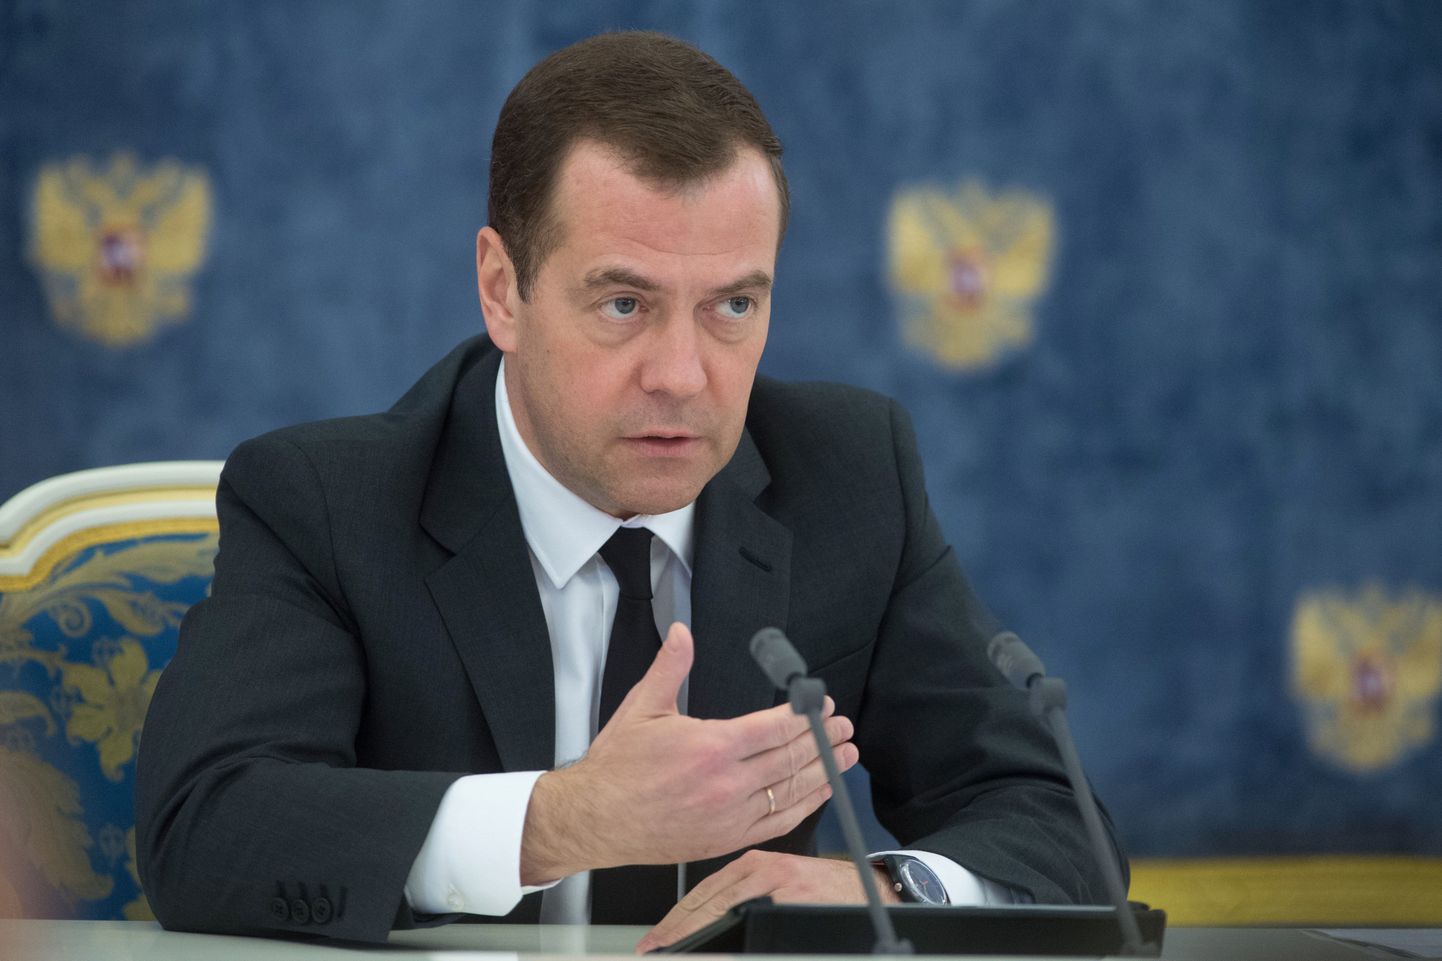 Venemaa peaminister Dmitri Medvedev